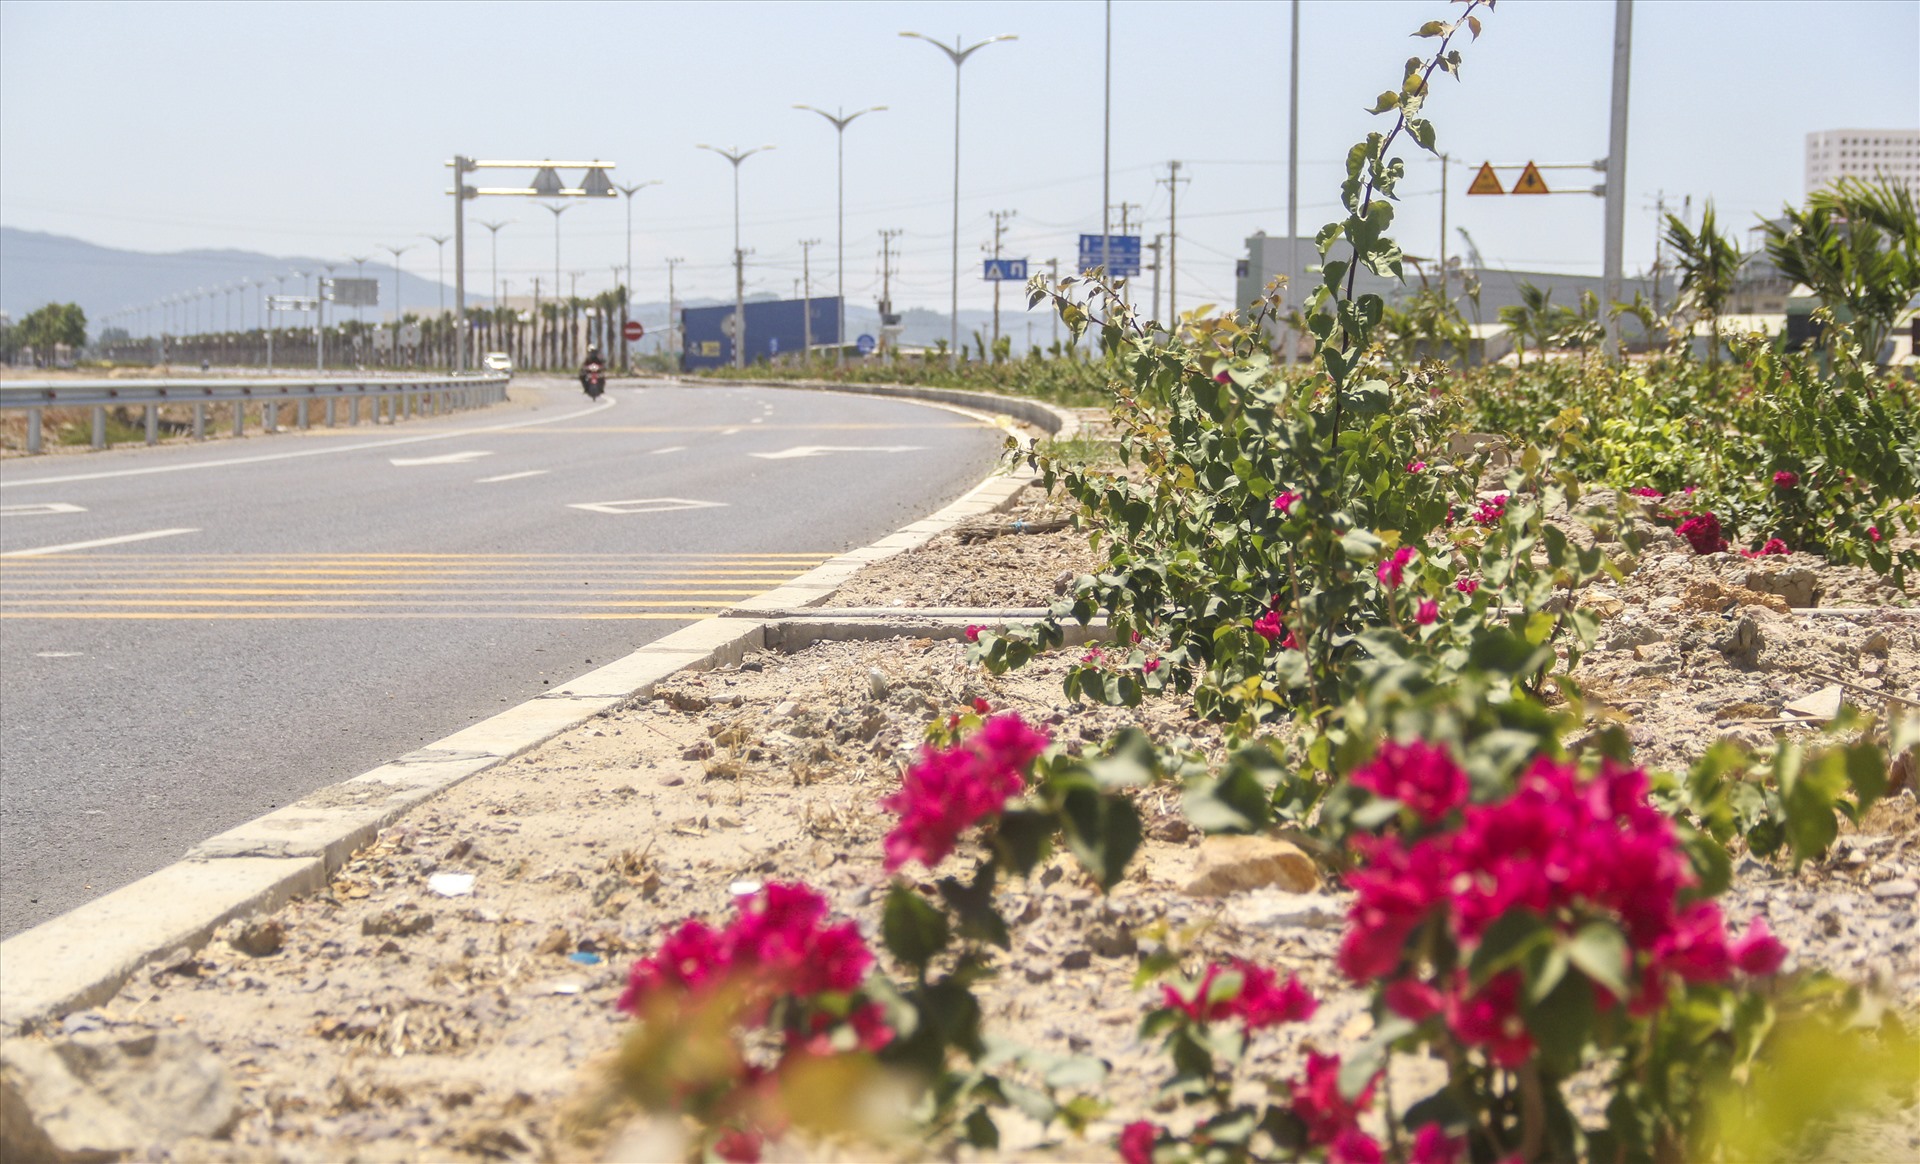 Để làm đẹp cảnh quan cho Quốc lộ 19 mới, tỉnh Bình Định đã cho trồng nhiều hoa giấy trên dải phân cách giữa đường. Tuy nhiên, tình trạng trộm hoa giấy trên dải phân cách liên tục diễn ra.